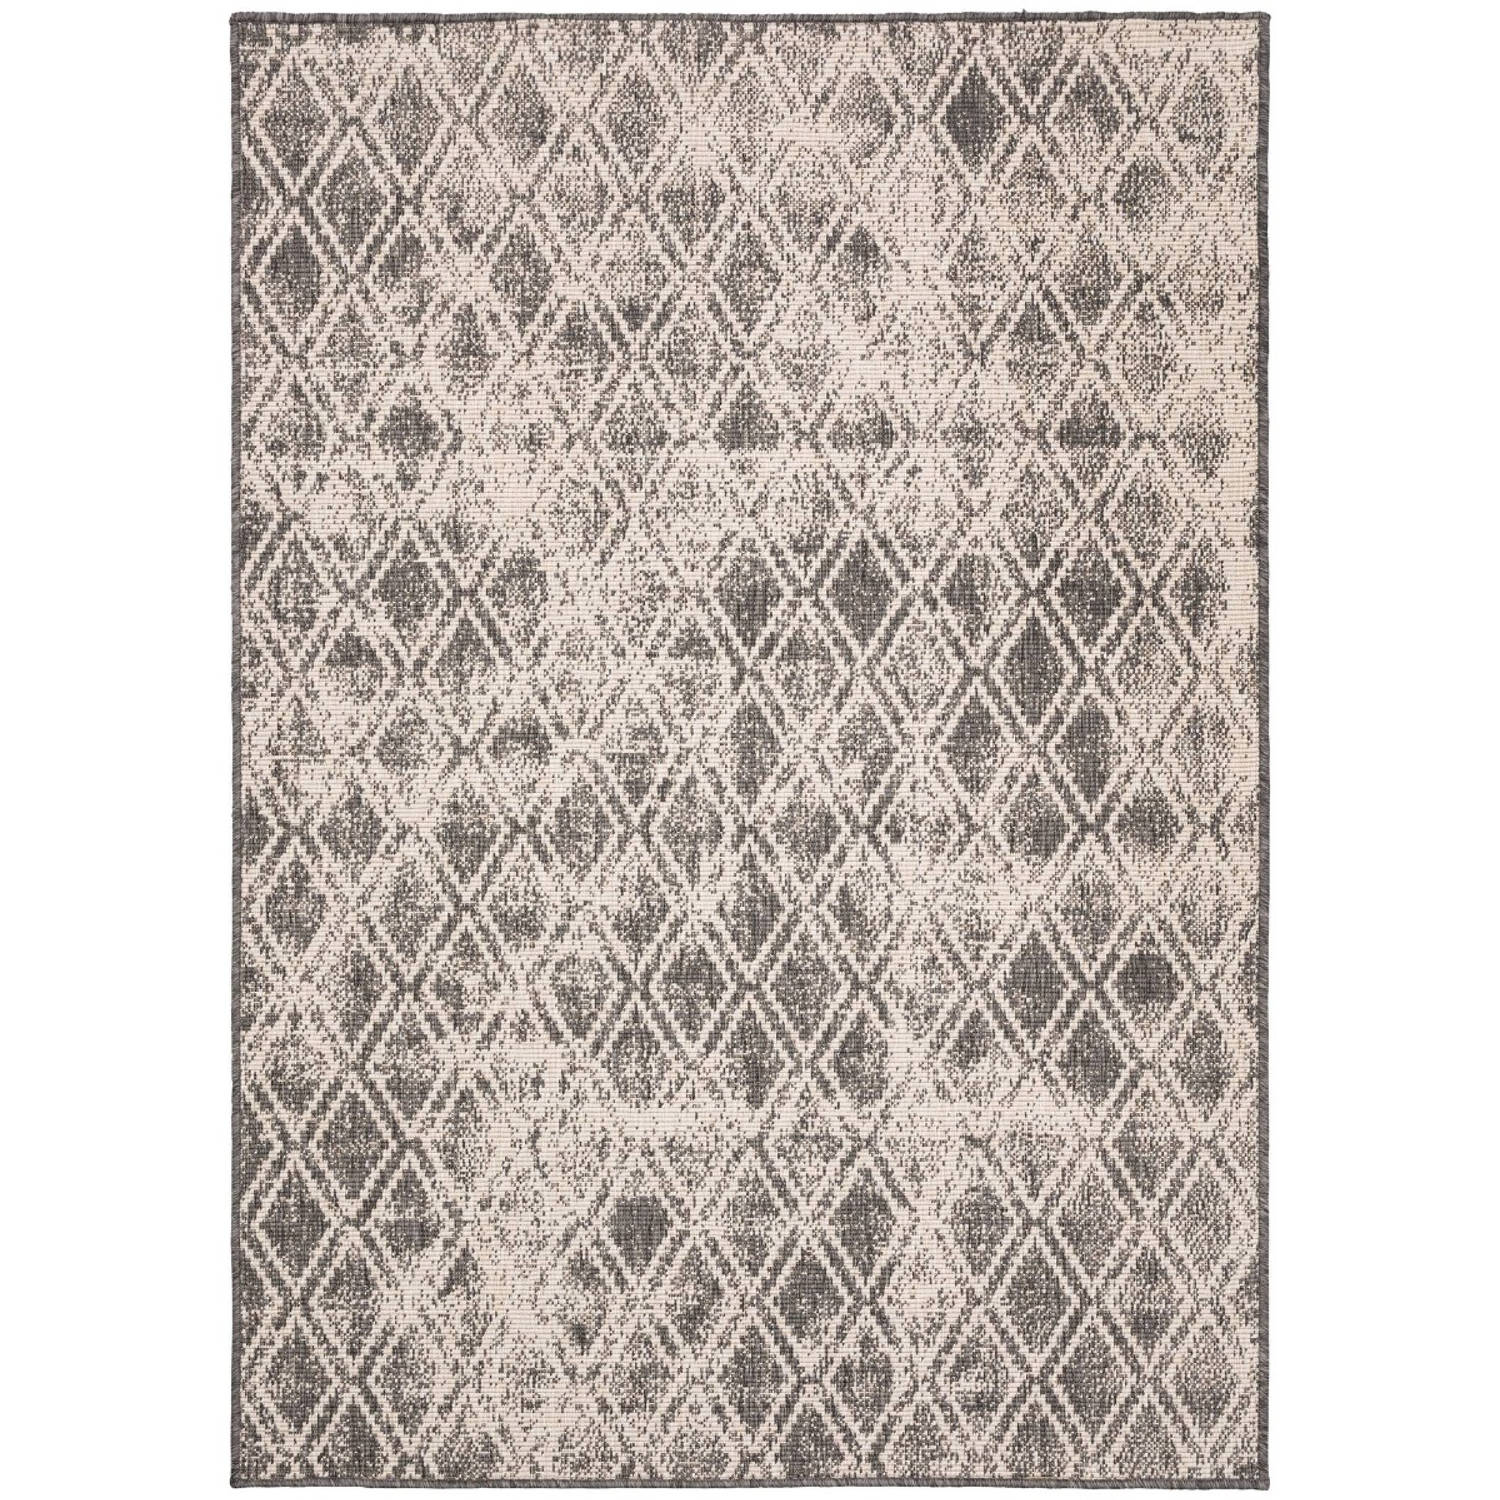 Buiten vloerkleed Frost - Grijs/Wit - dubbelzijdig - EVA Interior - 160 x 230 cm (M)